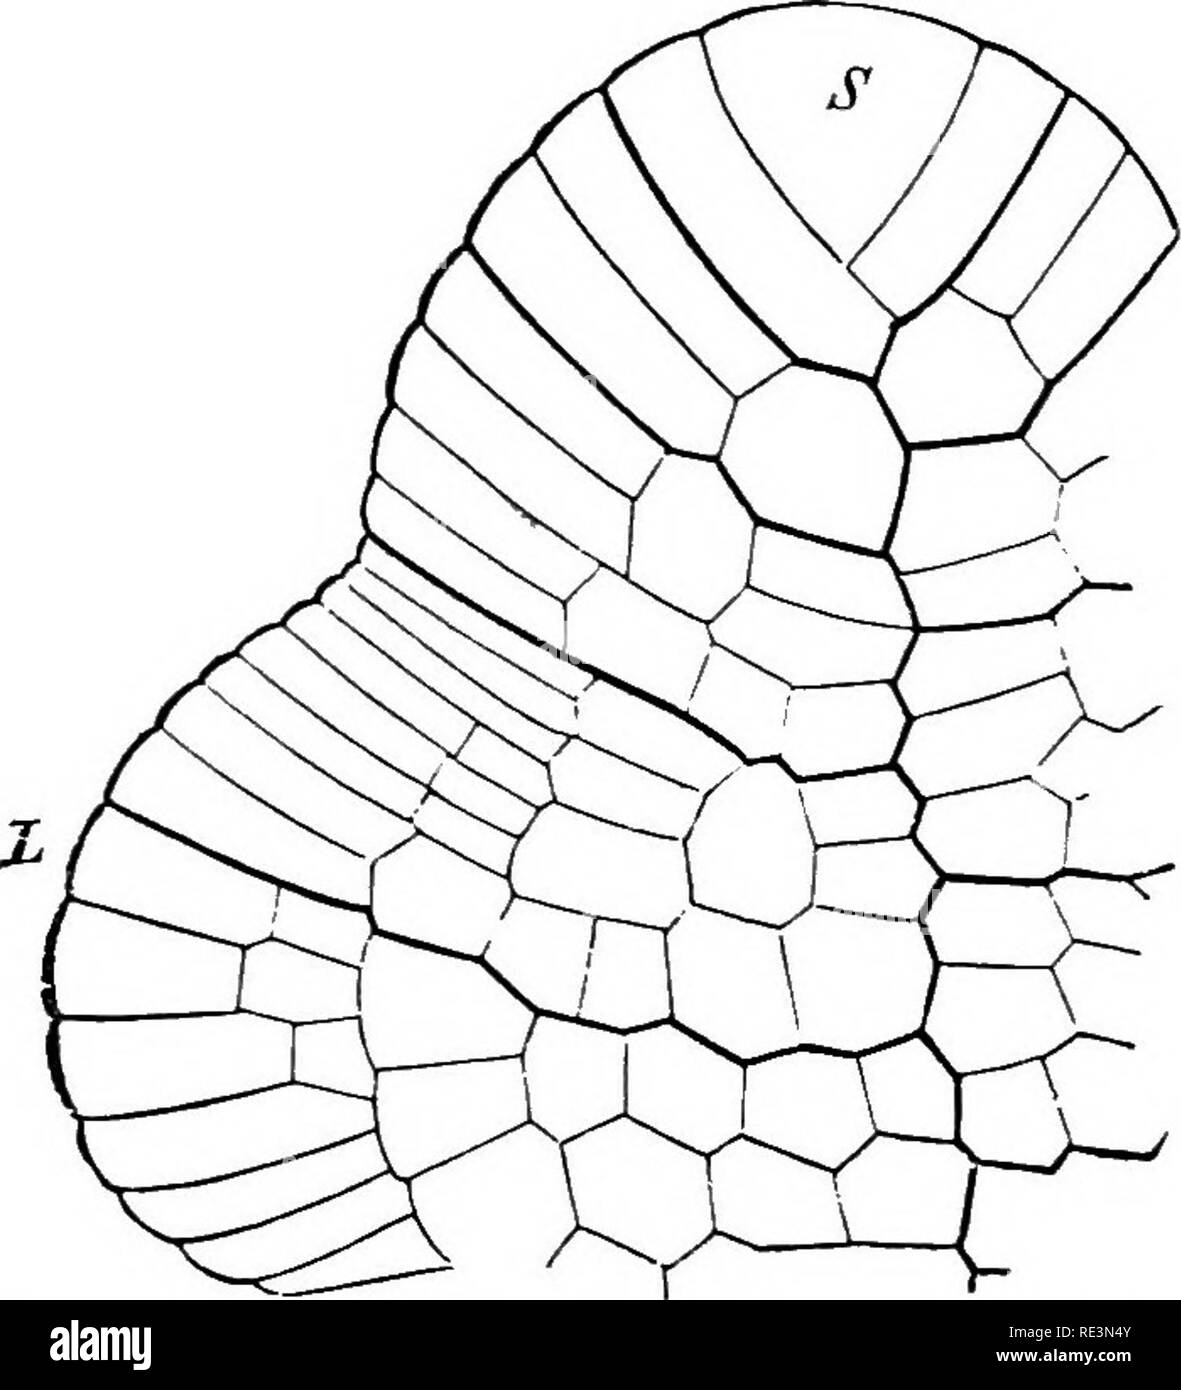 . Un manual de botánica criptogámicas. Cryptogams. 74 CRYPTOGAMS VASCULAR, el desarrollo de la fértil parenchyme (apical) parte de las hojas, dando la apariencia de un thyrsoid panicled o inflorescencia. La sf naranja suele ser azotado, y tiene una forma elíptica, o de una batalla- dore o raqueta-bat. Los lados son comúnmente delgado y membranoso y- la sporange dehisces bien longitudinalmente o transversalmente, generalmente a partir de la elasticidad de una corona o anillo de células de paredes gruesas marrón que corre a lo largo de o a través de ella. La posición de este anillo, y su desarrollo más o menos completa o Foto de stock